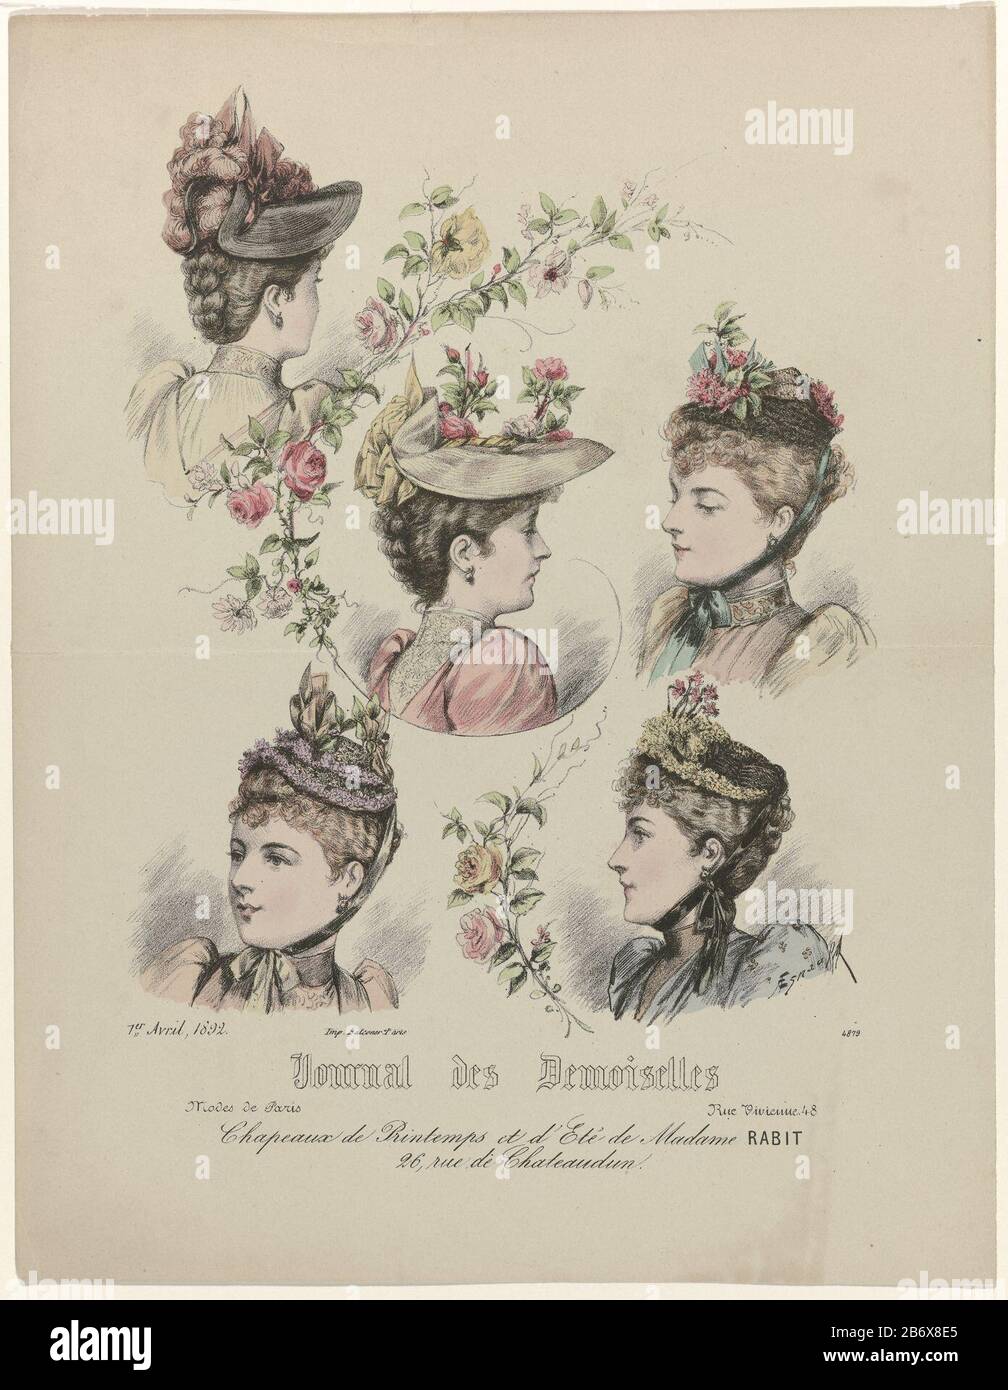 Journal des Demoiselles, 1 avril 1892, n° 4879 Chapeaux de Printemps ()  Cinq têtes femelles avec différents chapeaux. Selon la légende, chapeaux  pour le printemps et l'été de Madame Rabit. Imprimer le